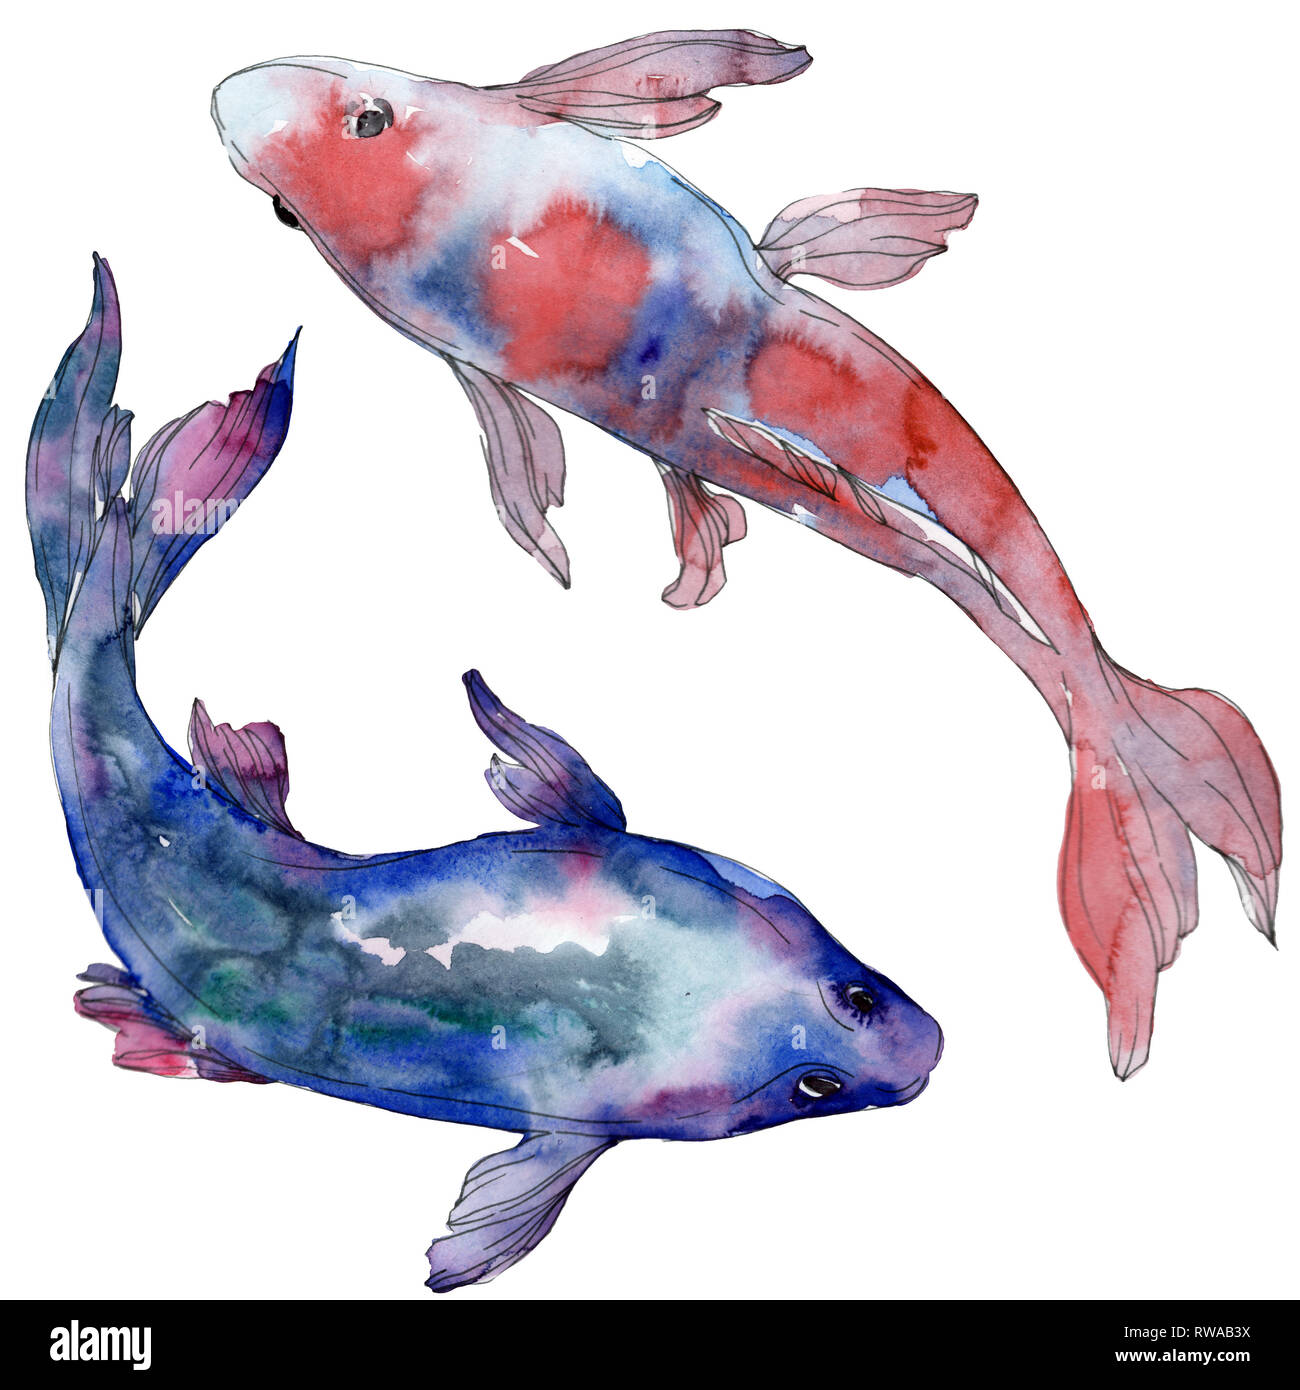 Aquatische Unterwasser bunten tropischen Fischen set beschmutzt. Rotes Meer und exotische Fische. Aquarell Hintergrund gesetzt. Aquarell Zeichnung mode Tjeukemeer Stockfoto